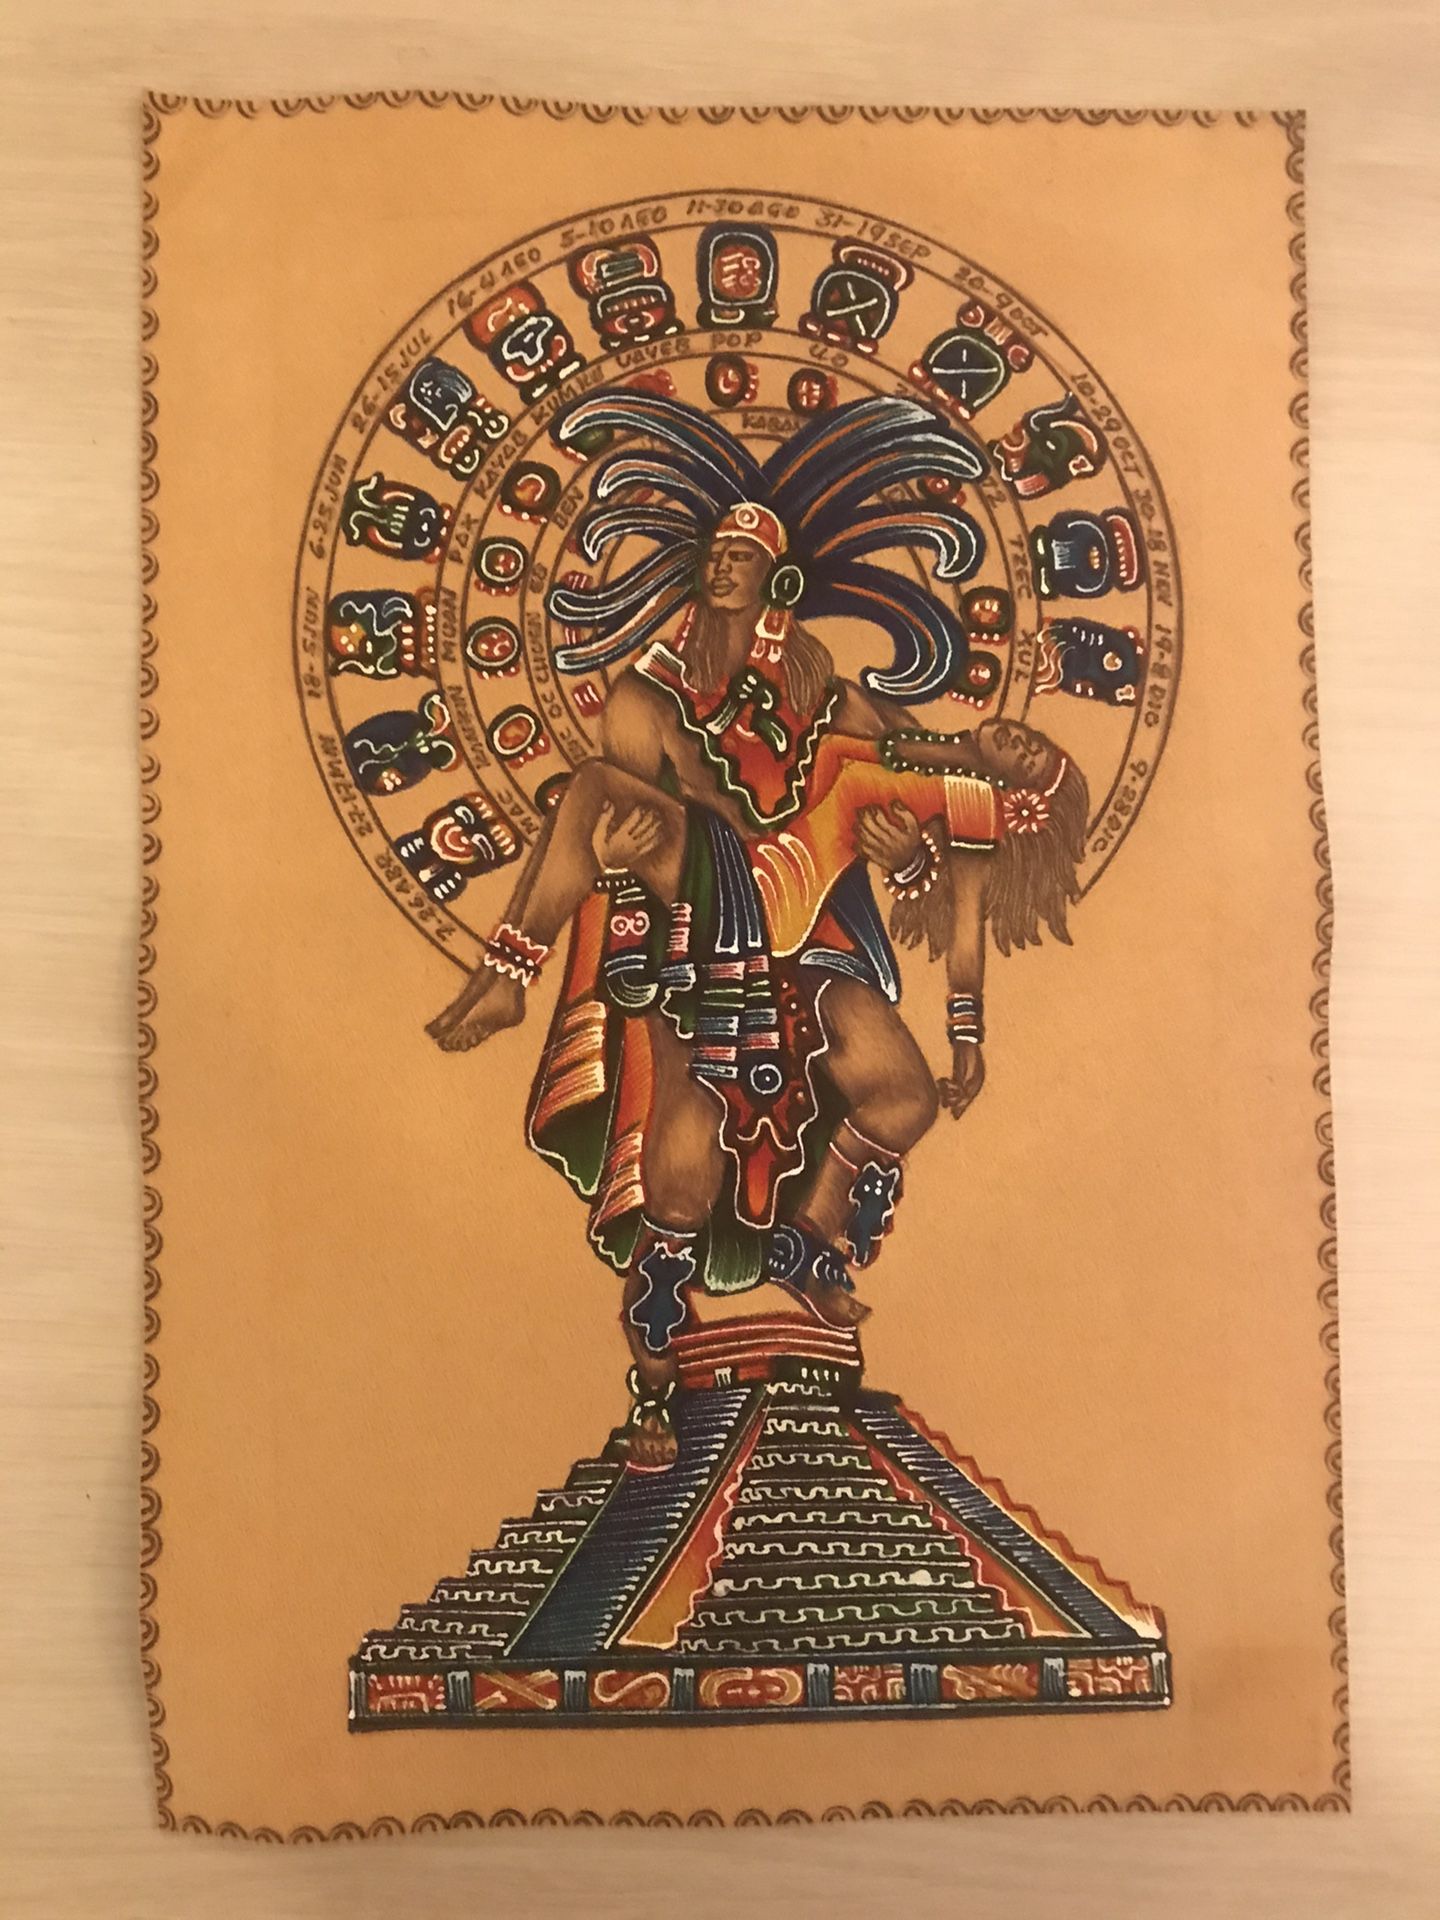 Mayan Aztec Acrylic Painting on Leather - Popocatépetl and Iztaccíhuatl "Eternal Love"